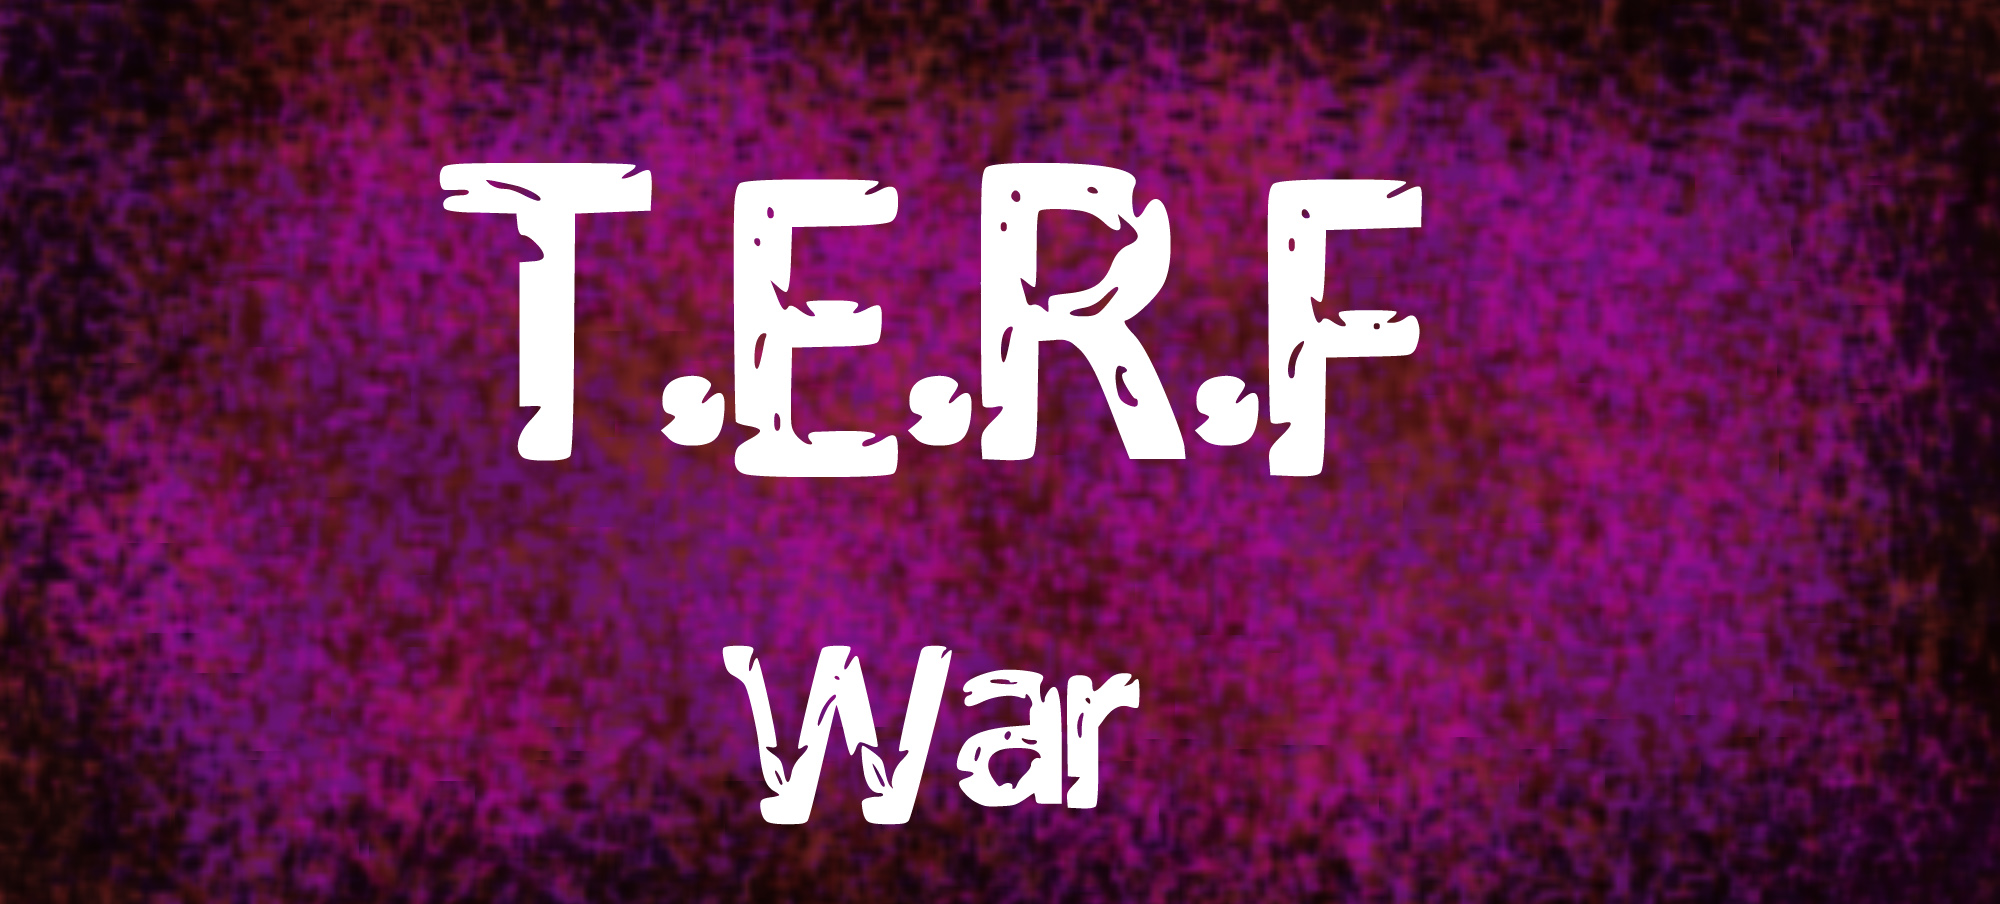 T.E.R.F War